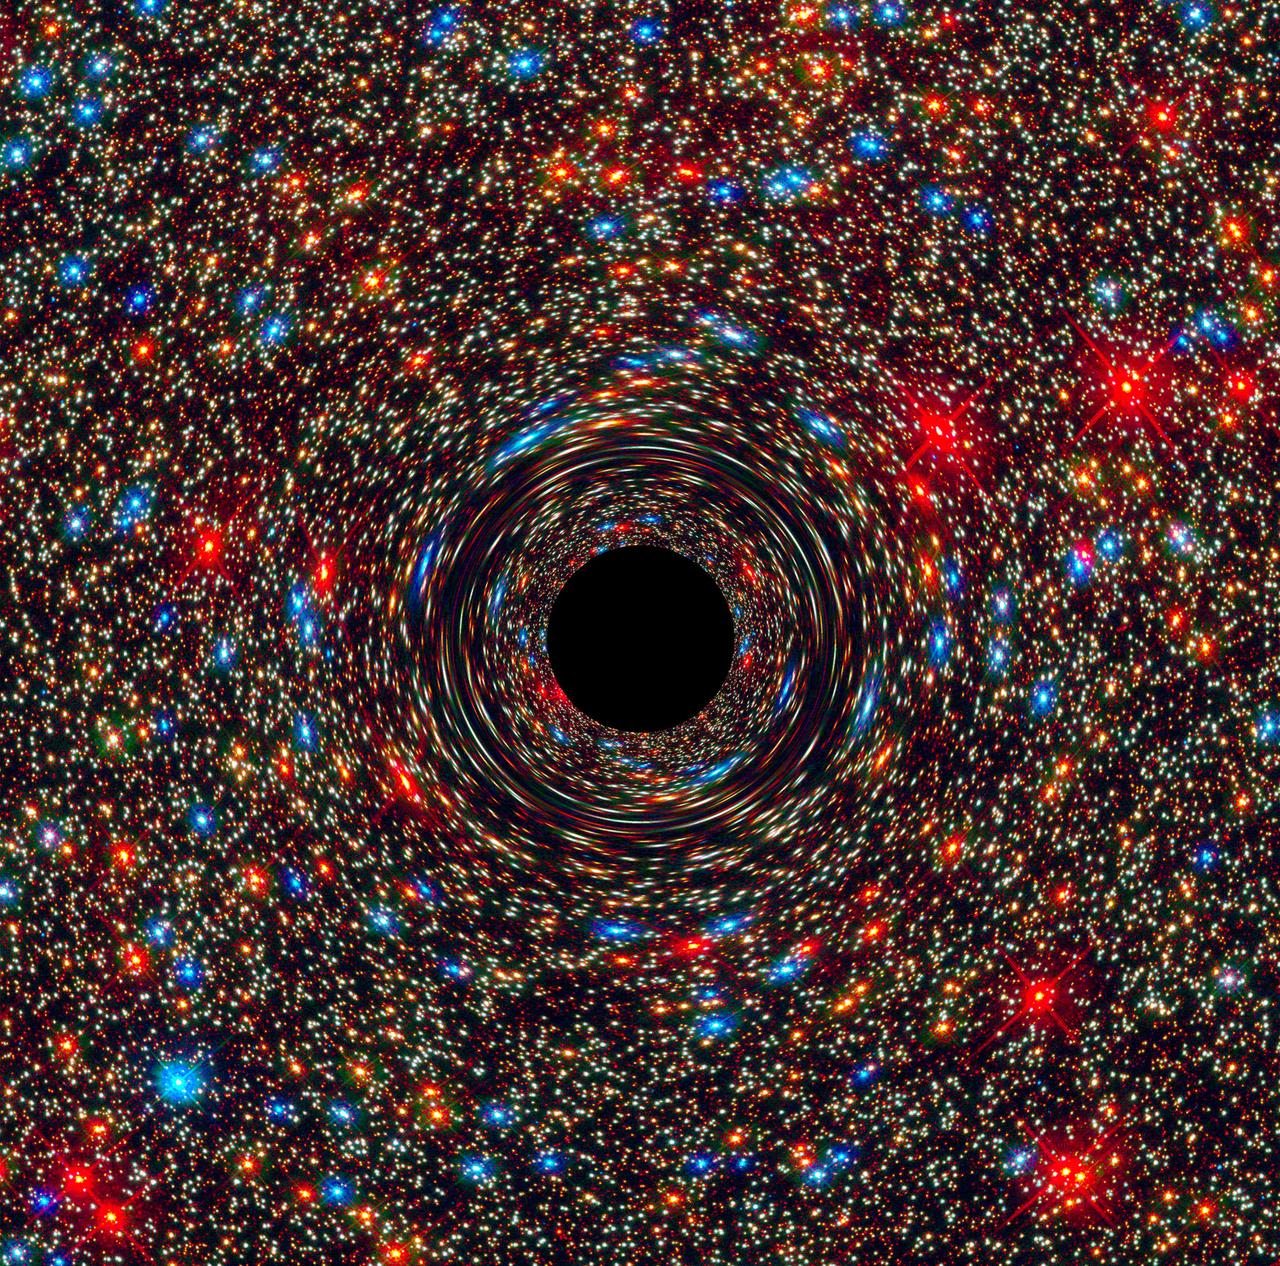 Behemoth black hole. Credit: NASA